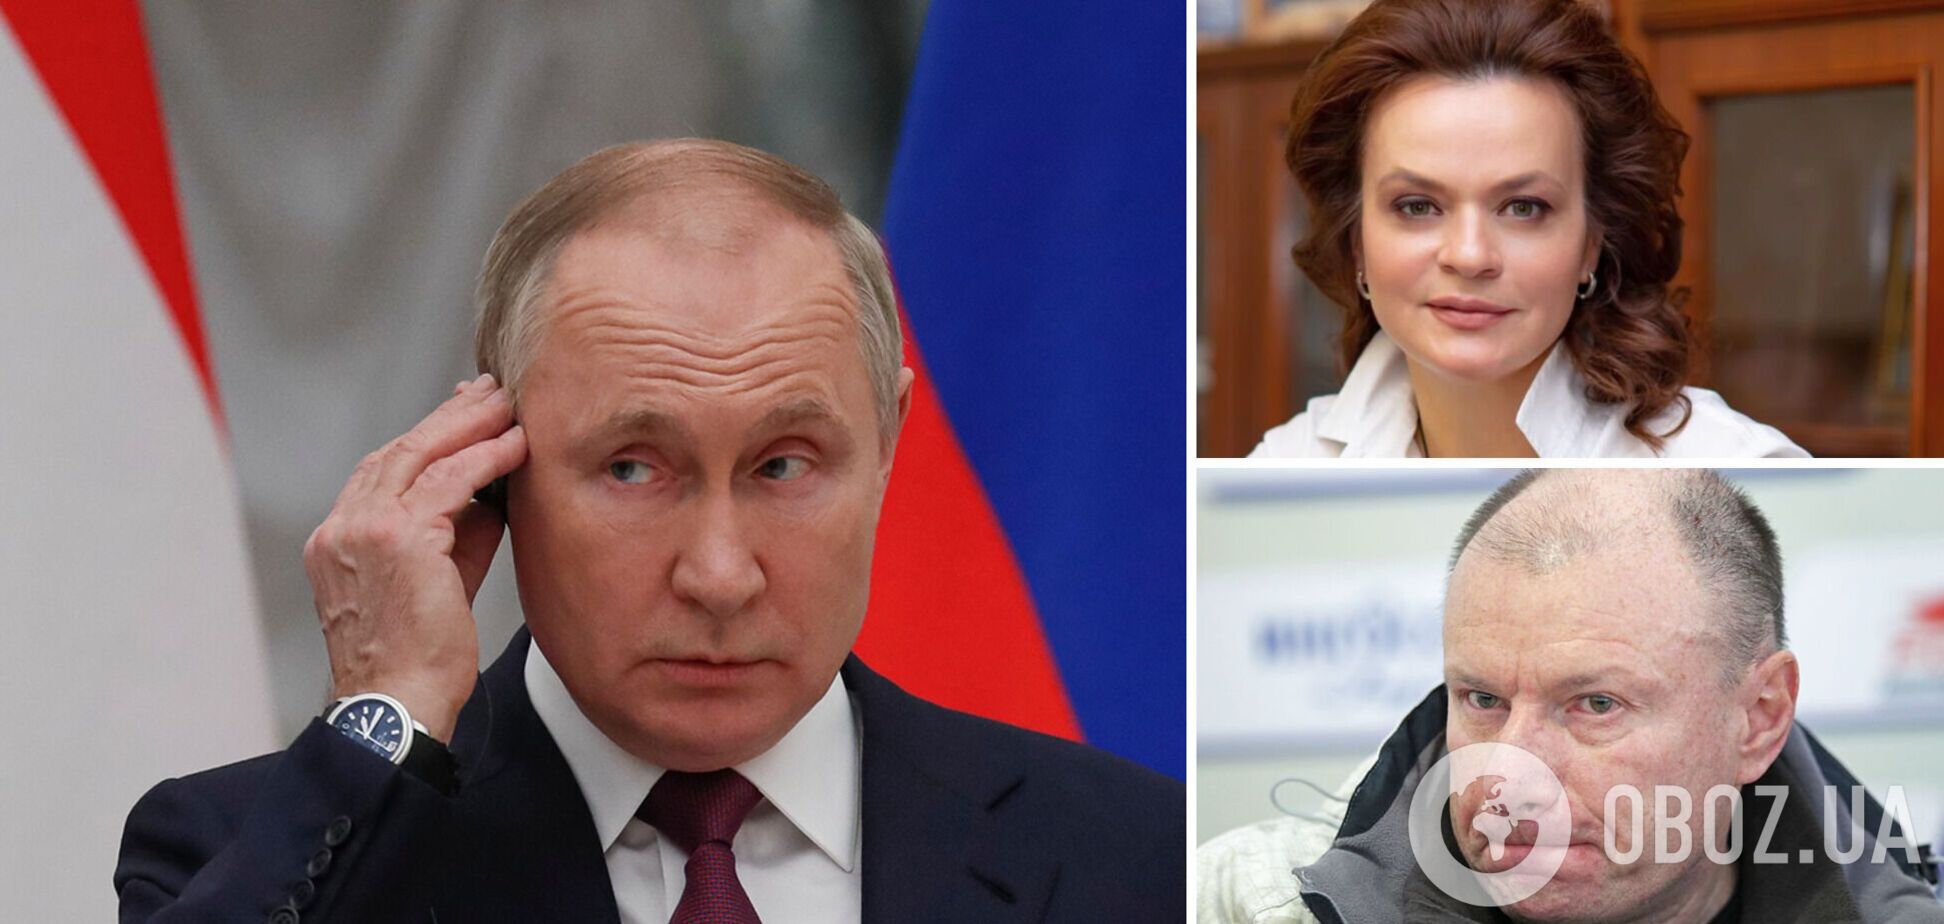 Цивилева и Потанин попали под санкции из-за связей с Путиным